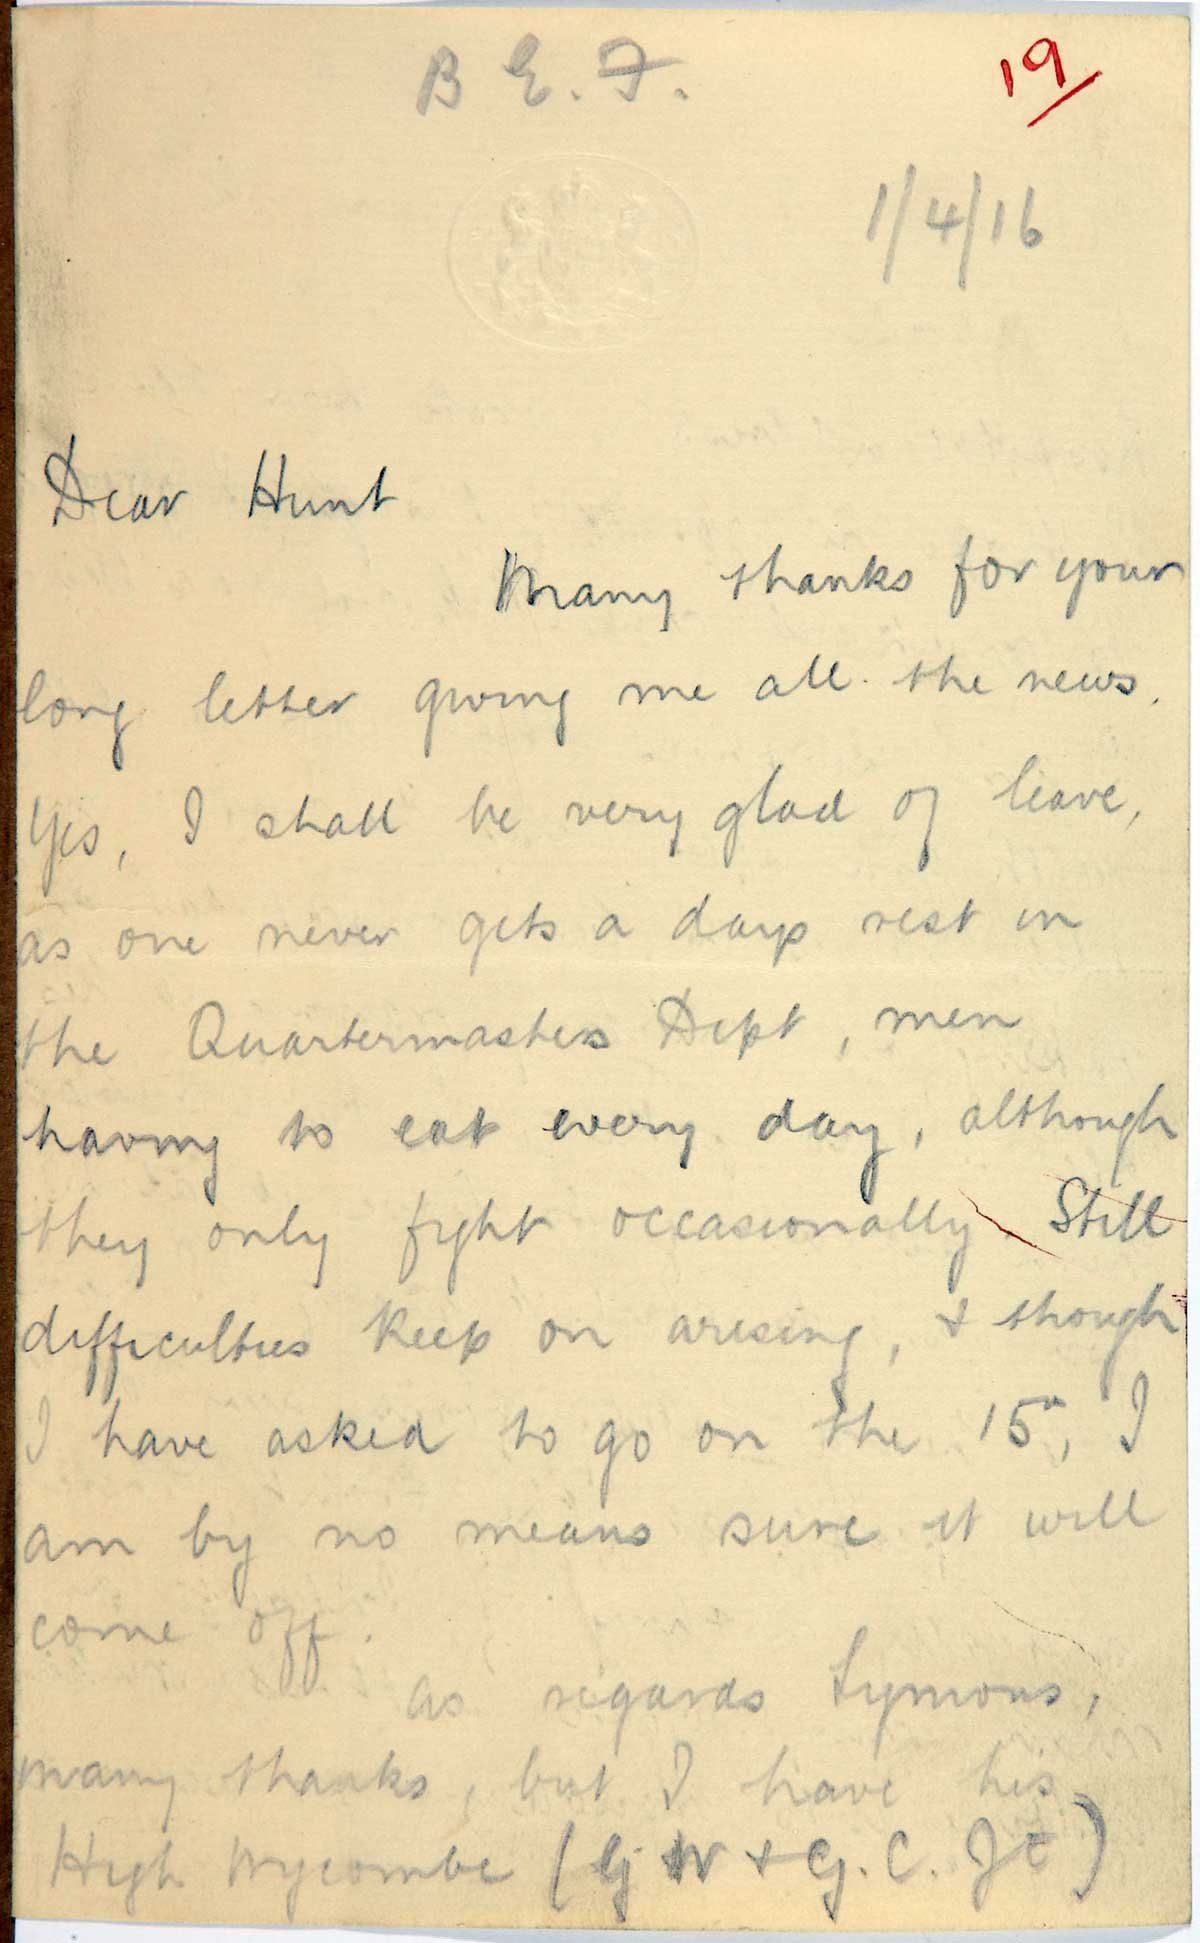 Handwritten letter on yellow notepaper, beginning 'Dear Hunt'.